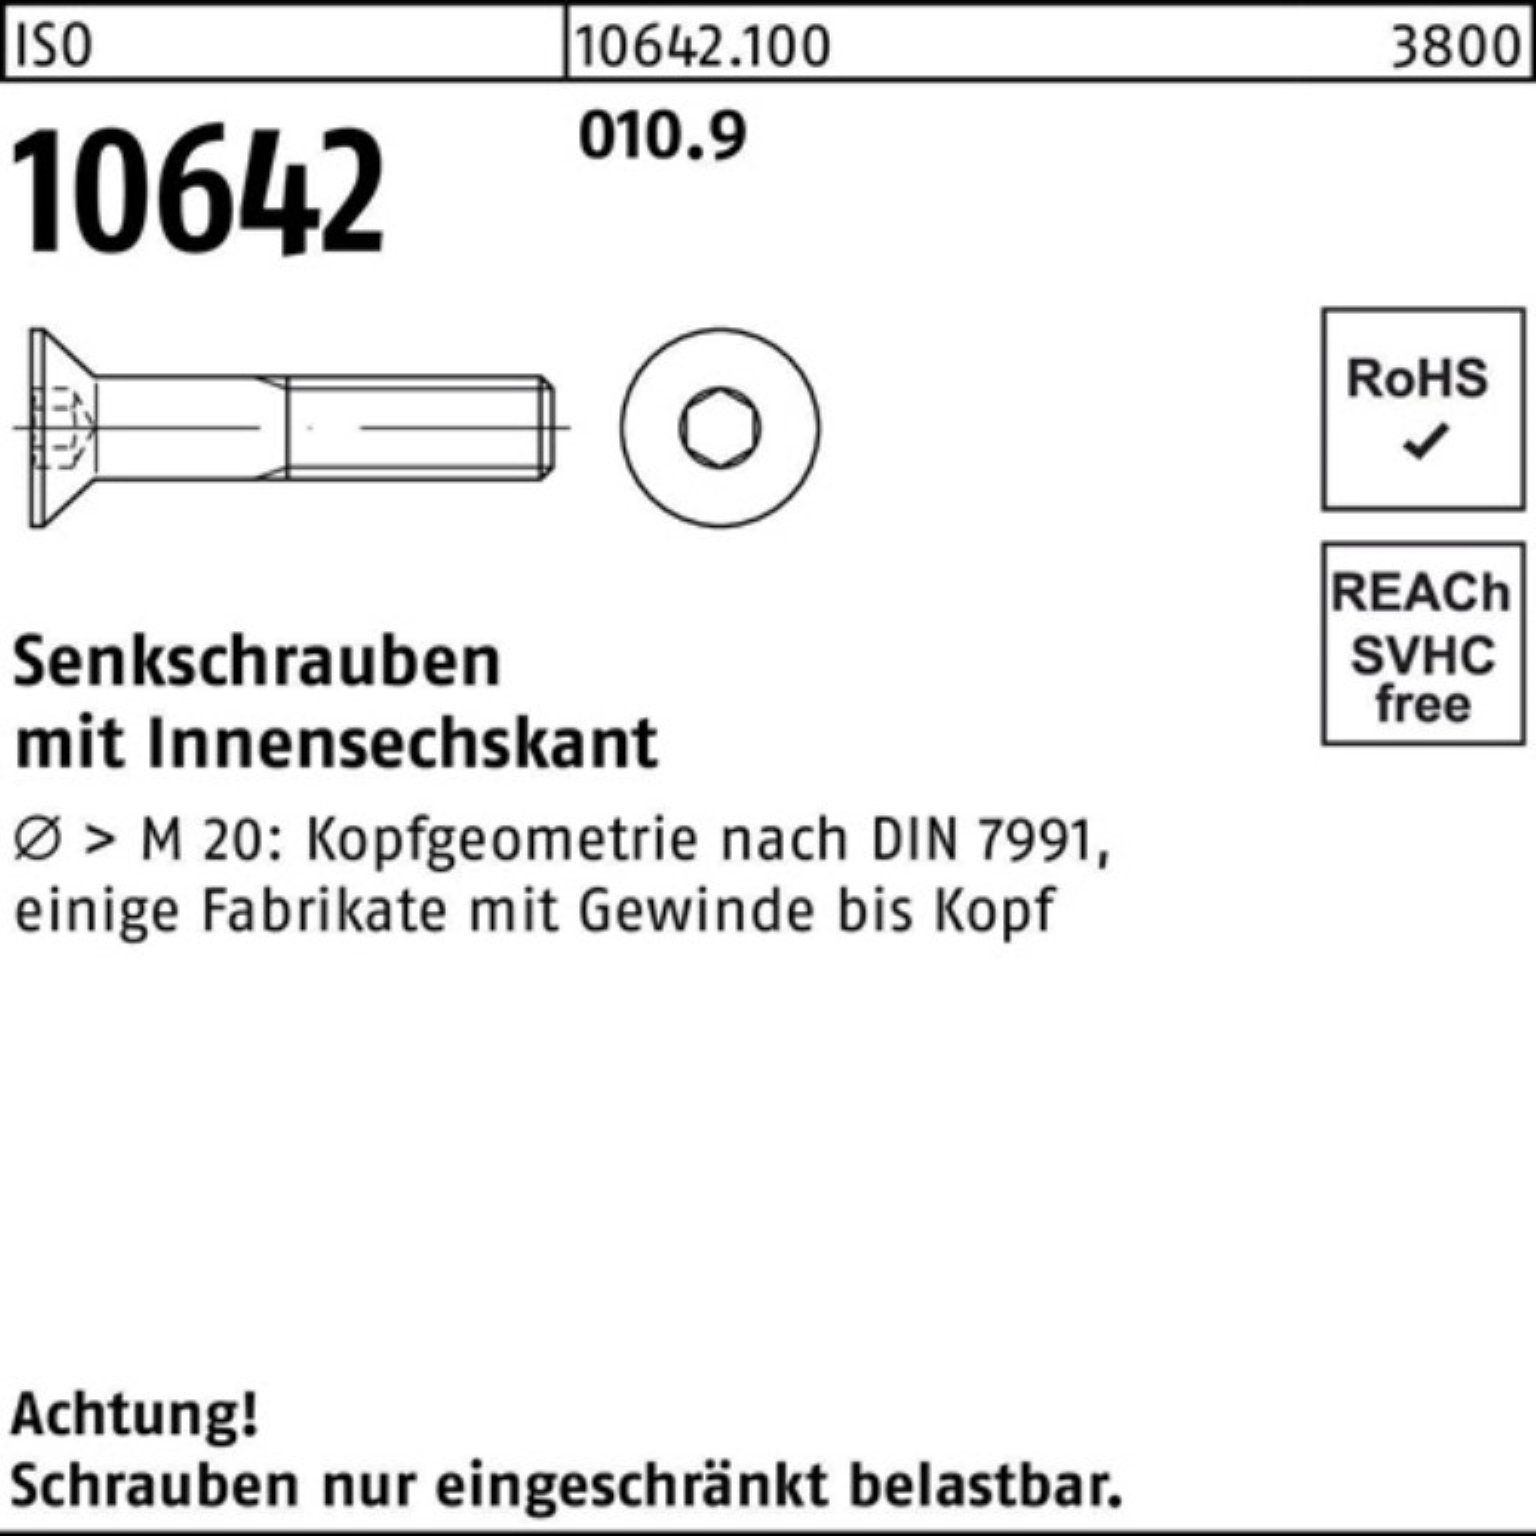 IS Innen-6kt M3x Reyher 010.9 10642 500 ISO 500er Stück Pack 16 Senkschraube Senkschraube